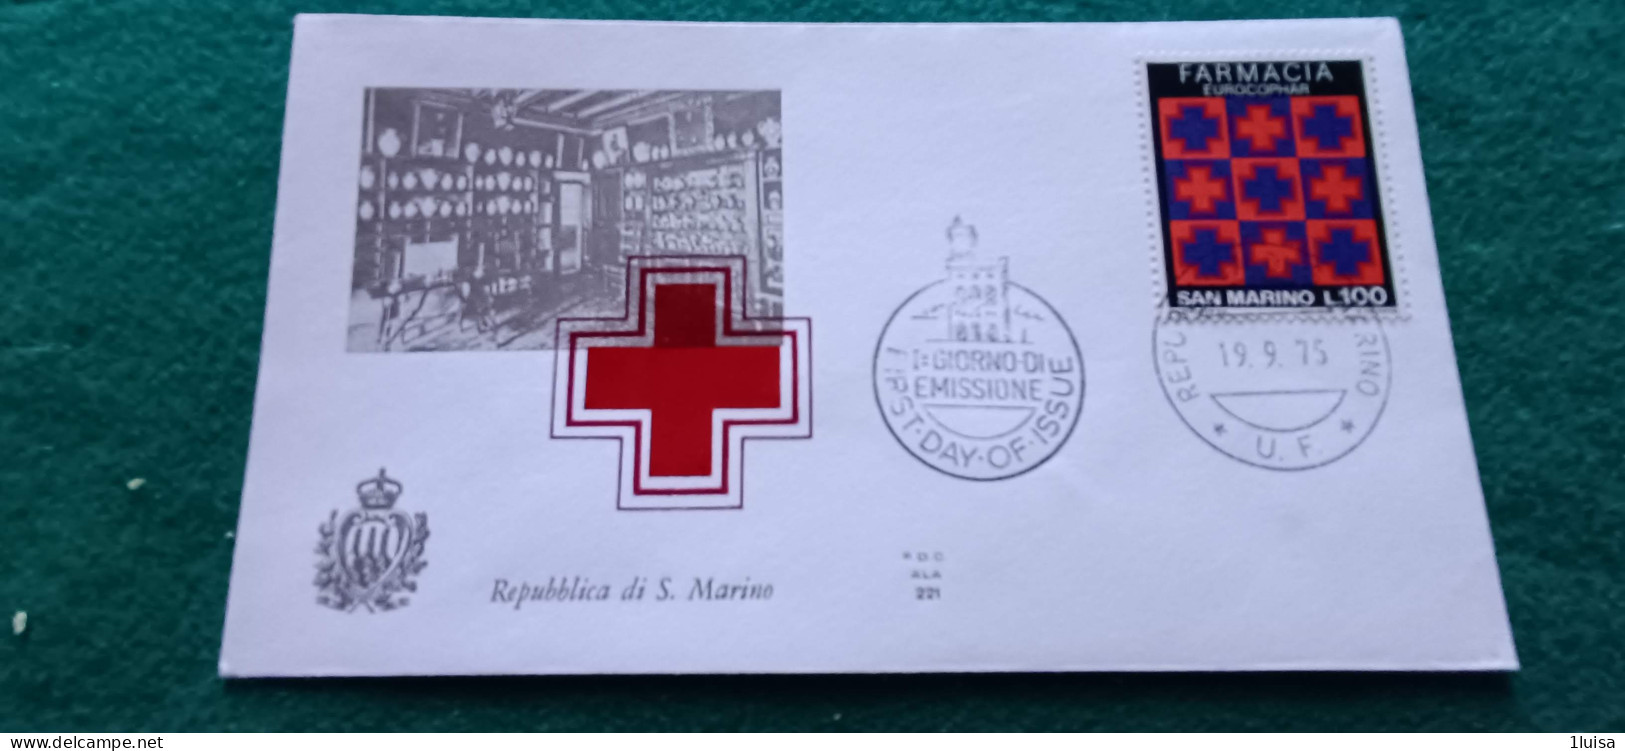 SAN MARINO 19/9/75 Croce Rossa Farmacia - Francobolli Per Espresso